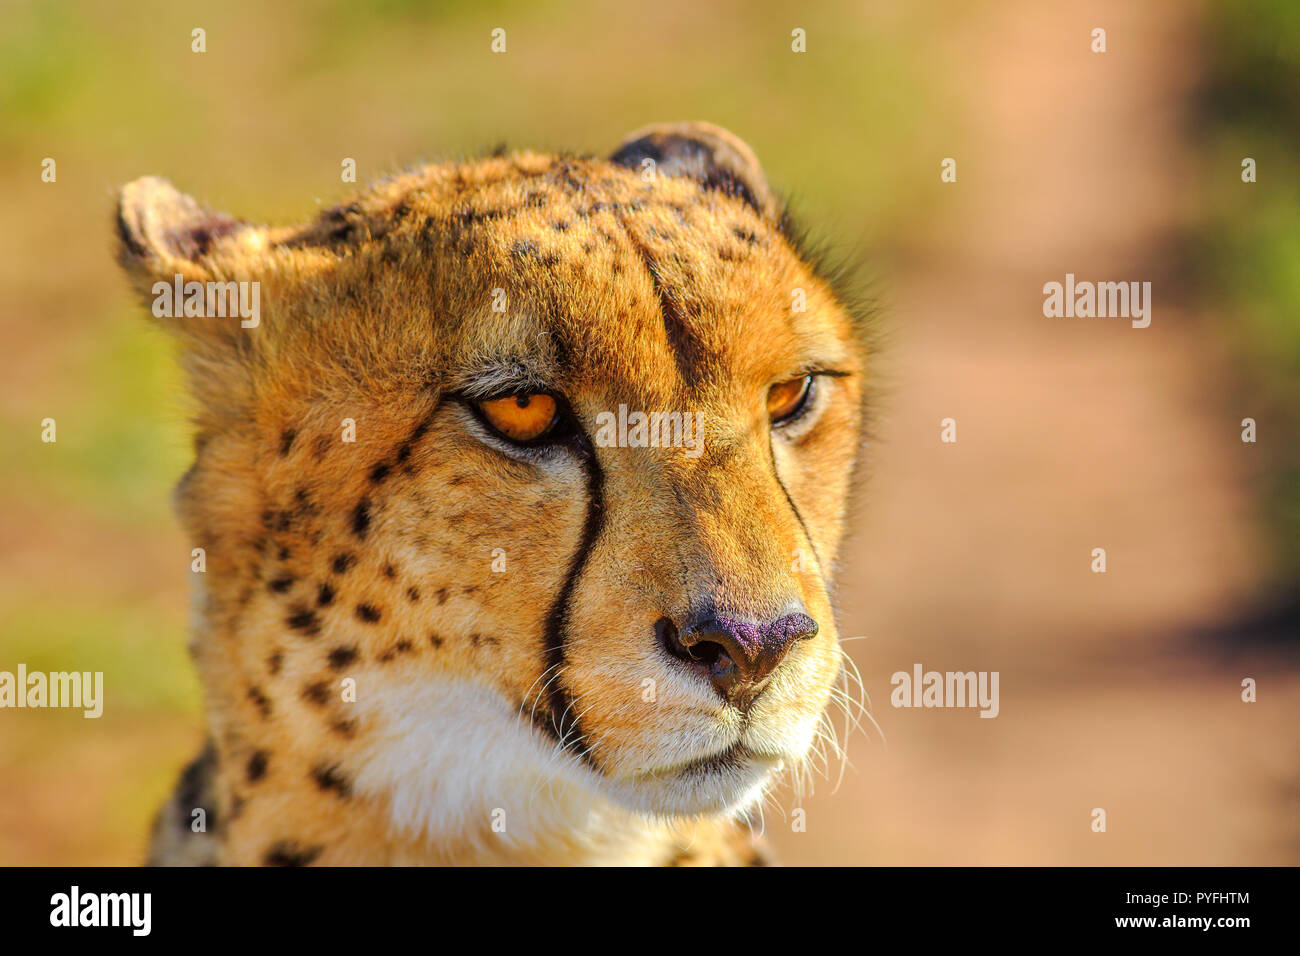 Portrait von cheetah Art Acinonyx jubatus, Familie der Feliden, in Südafrika. Seitenansicht der afrikanischen Geparden auf unscharfen Hintergrund im natürlichen Lebensraum. Stockfoto